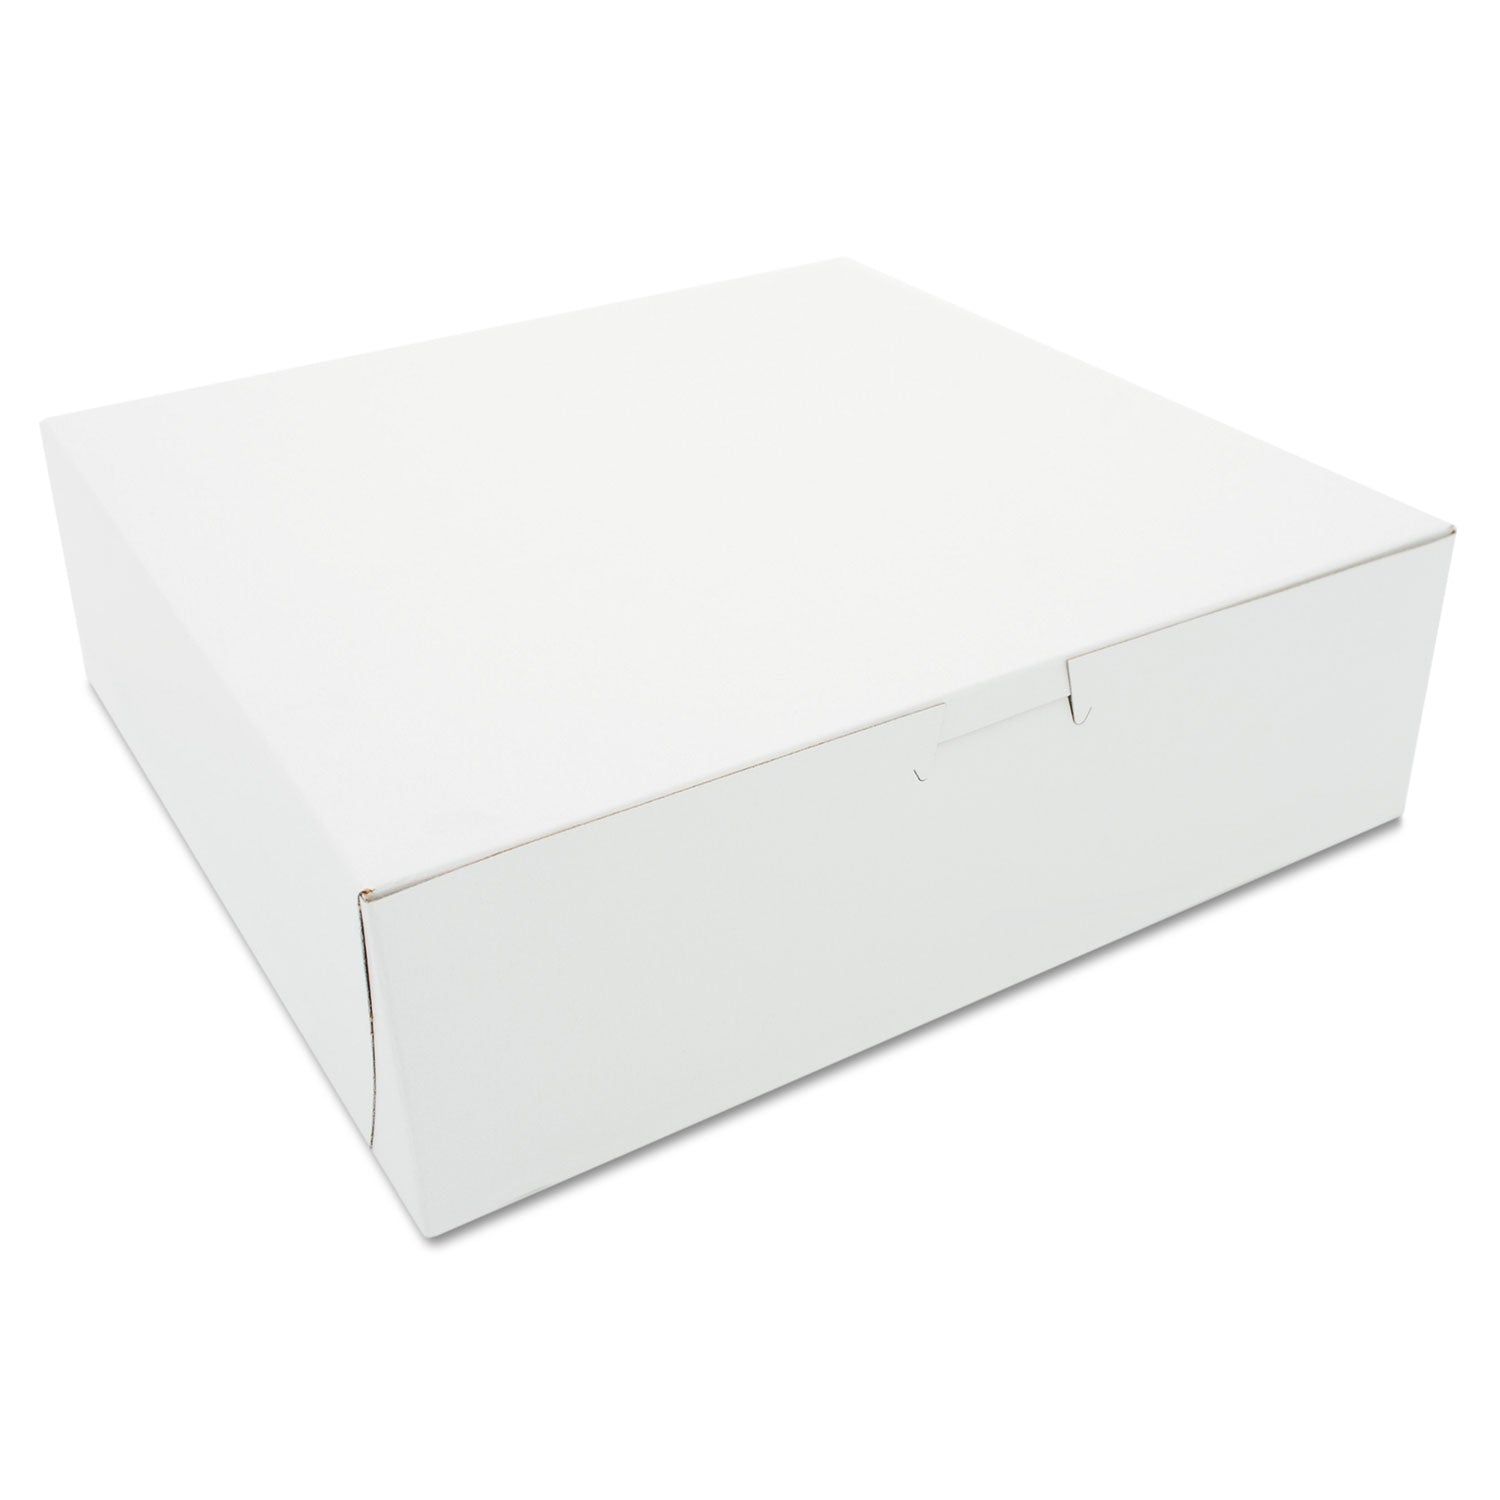 White One-Piece Non-Window Bakery Boxes, 10 x 10 x 3, White, Paper, 200/Carton - 